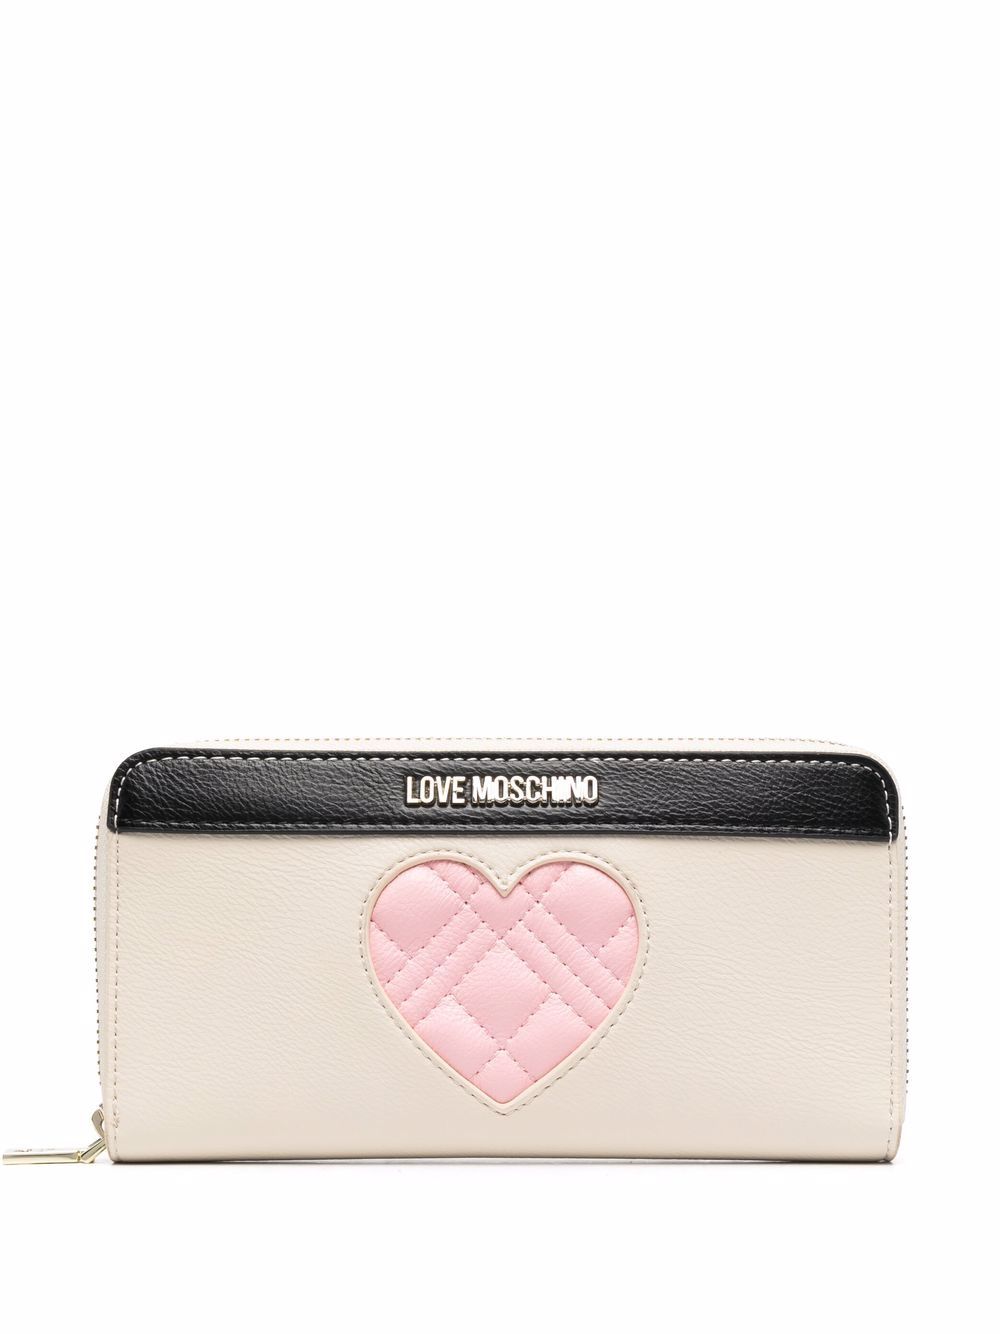 фото Love moschino кошелек с логотипом